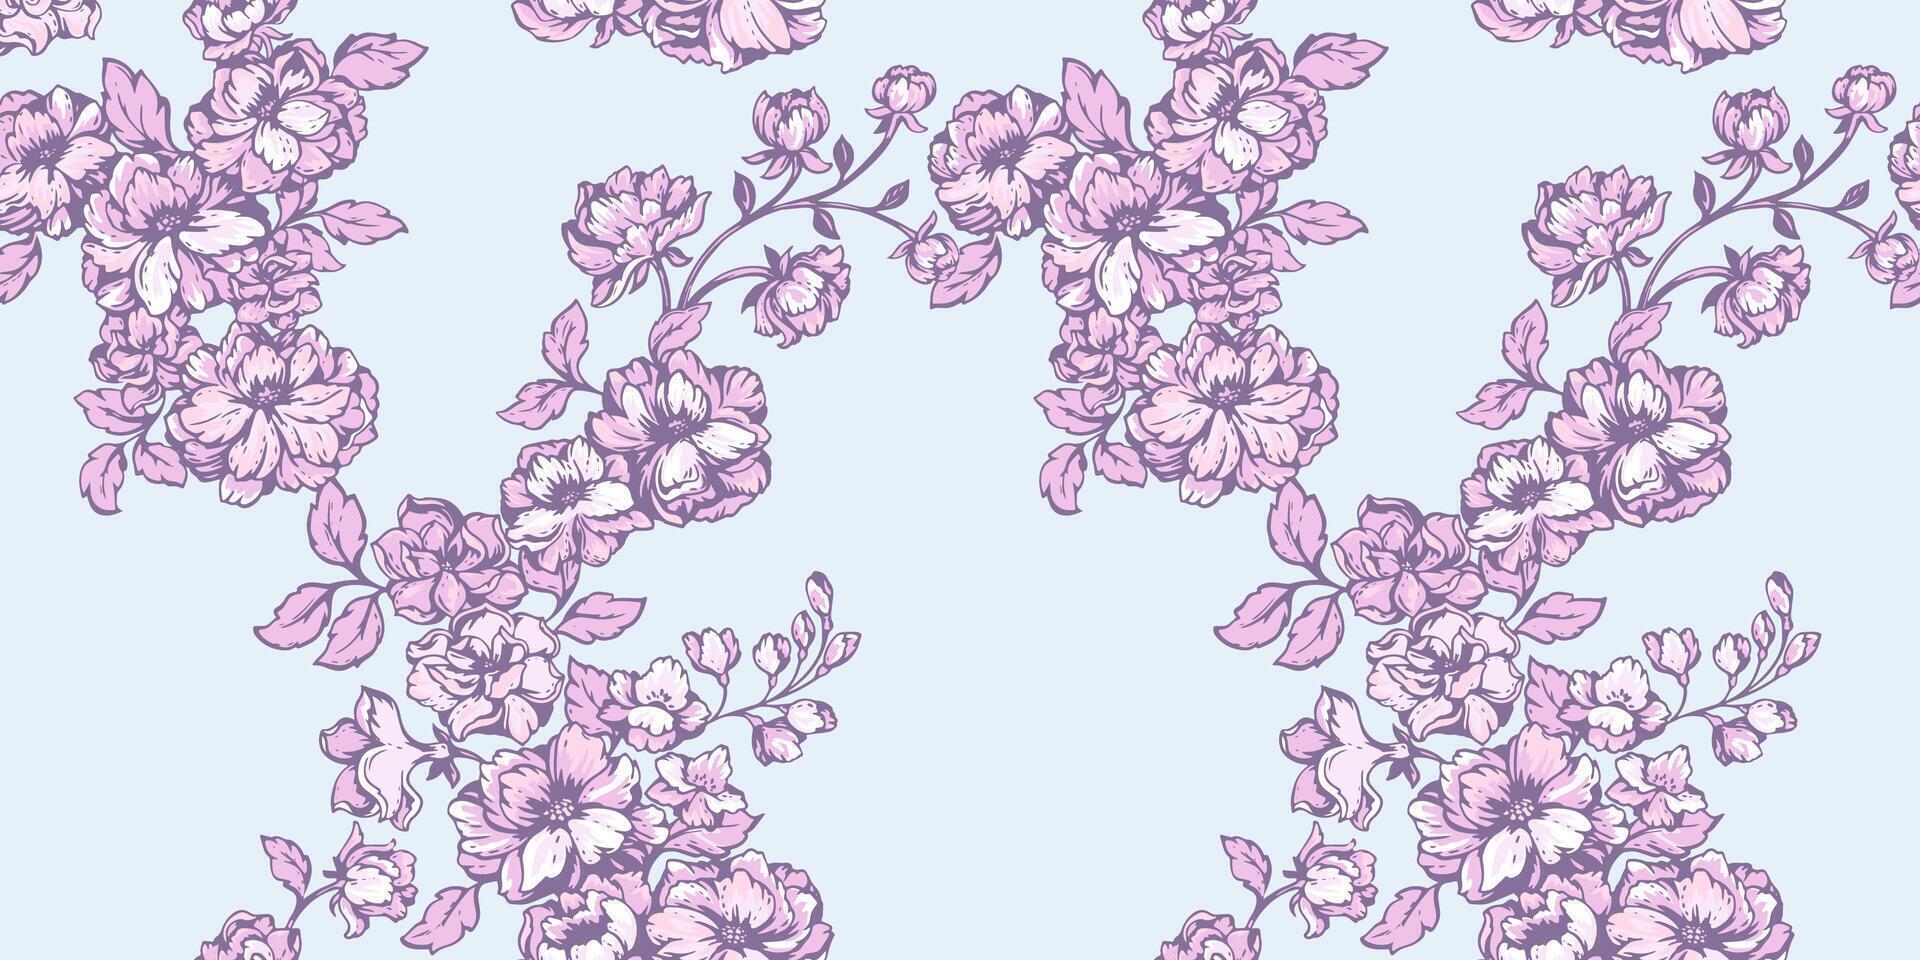 skön, blomning, försiktigt rosa stjälkar blommig sömlös mönster. abstrakt, stiliserade vild blommor grenar mönstrad på en pastell blå bakgrund. hand ritade. mall för design, utskrift, tyg vektor